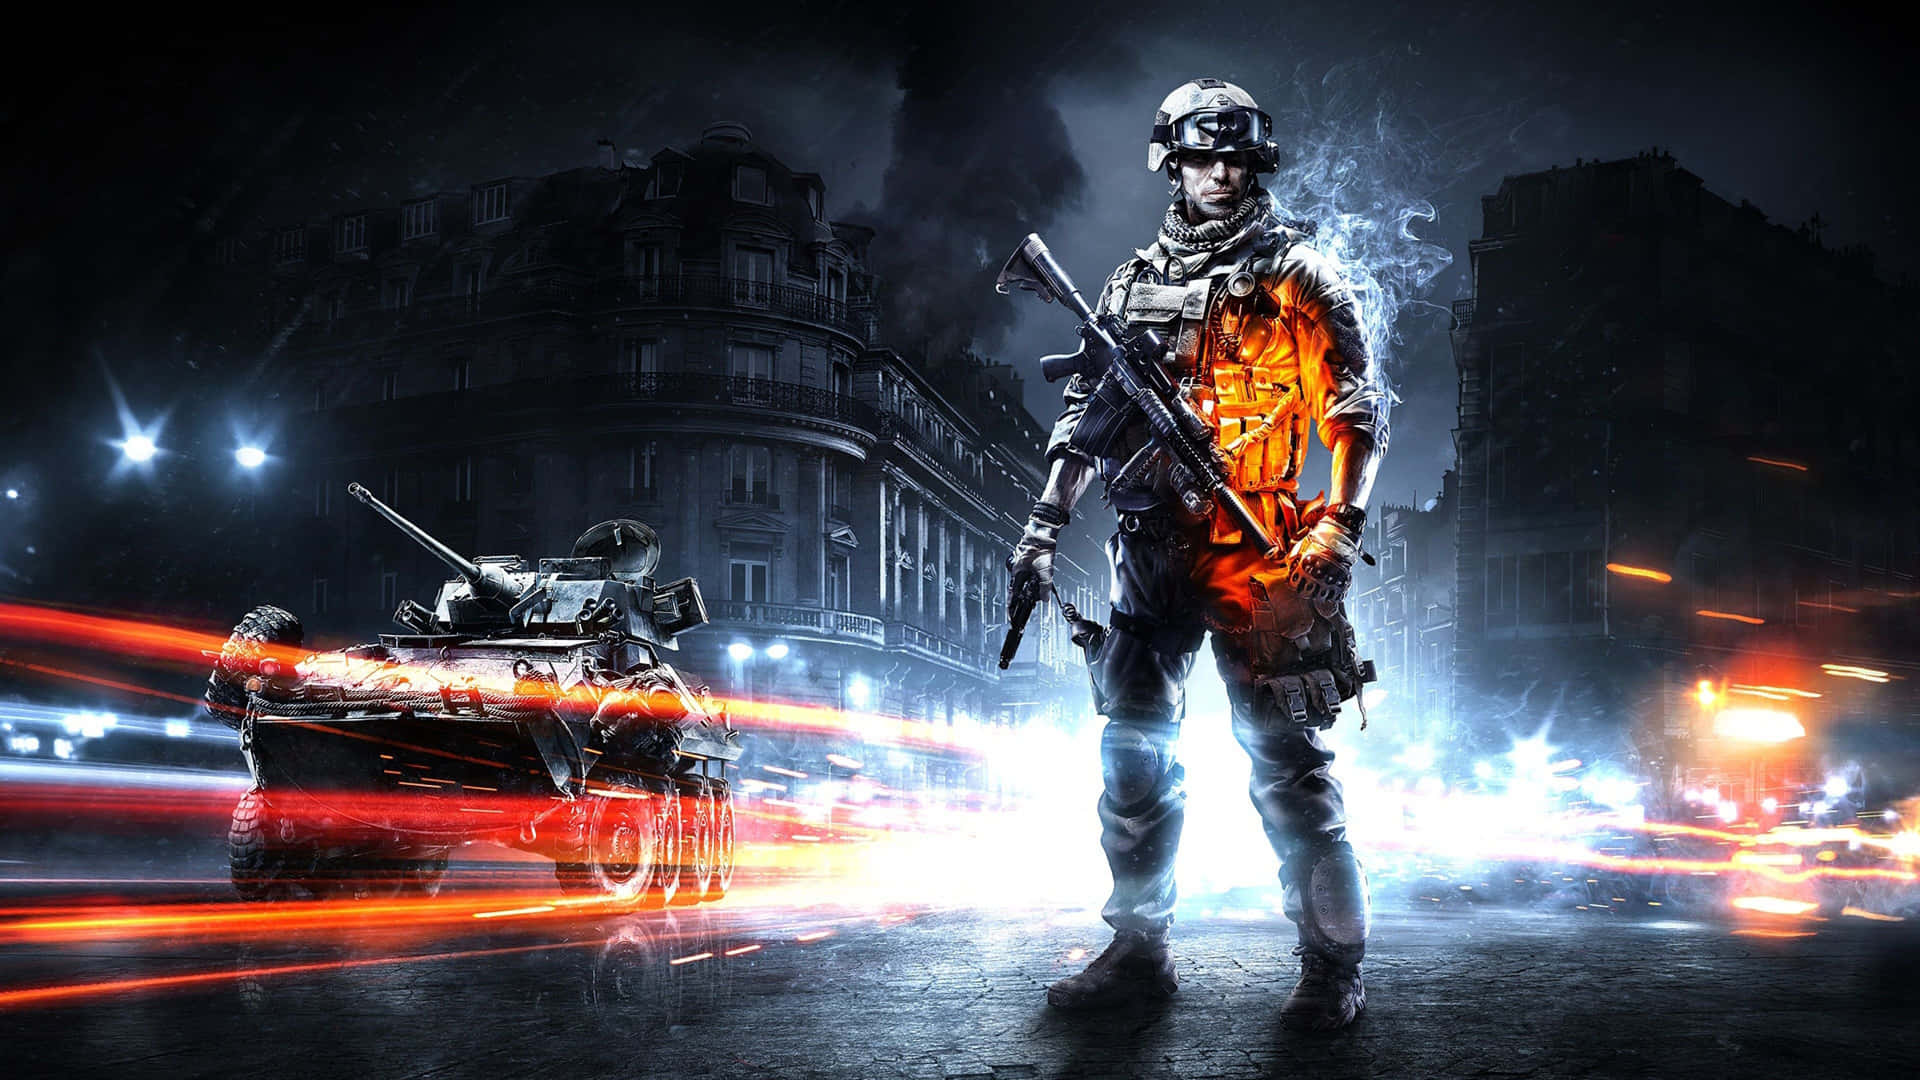 Profitipp: Beherrsche Das Schlachtfeld In Battlefield 4